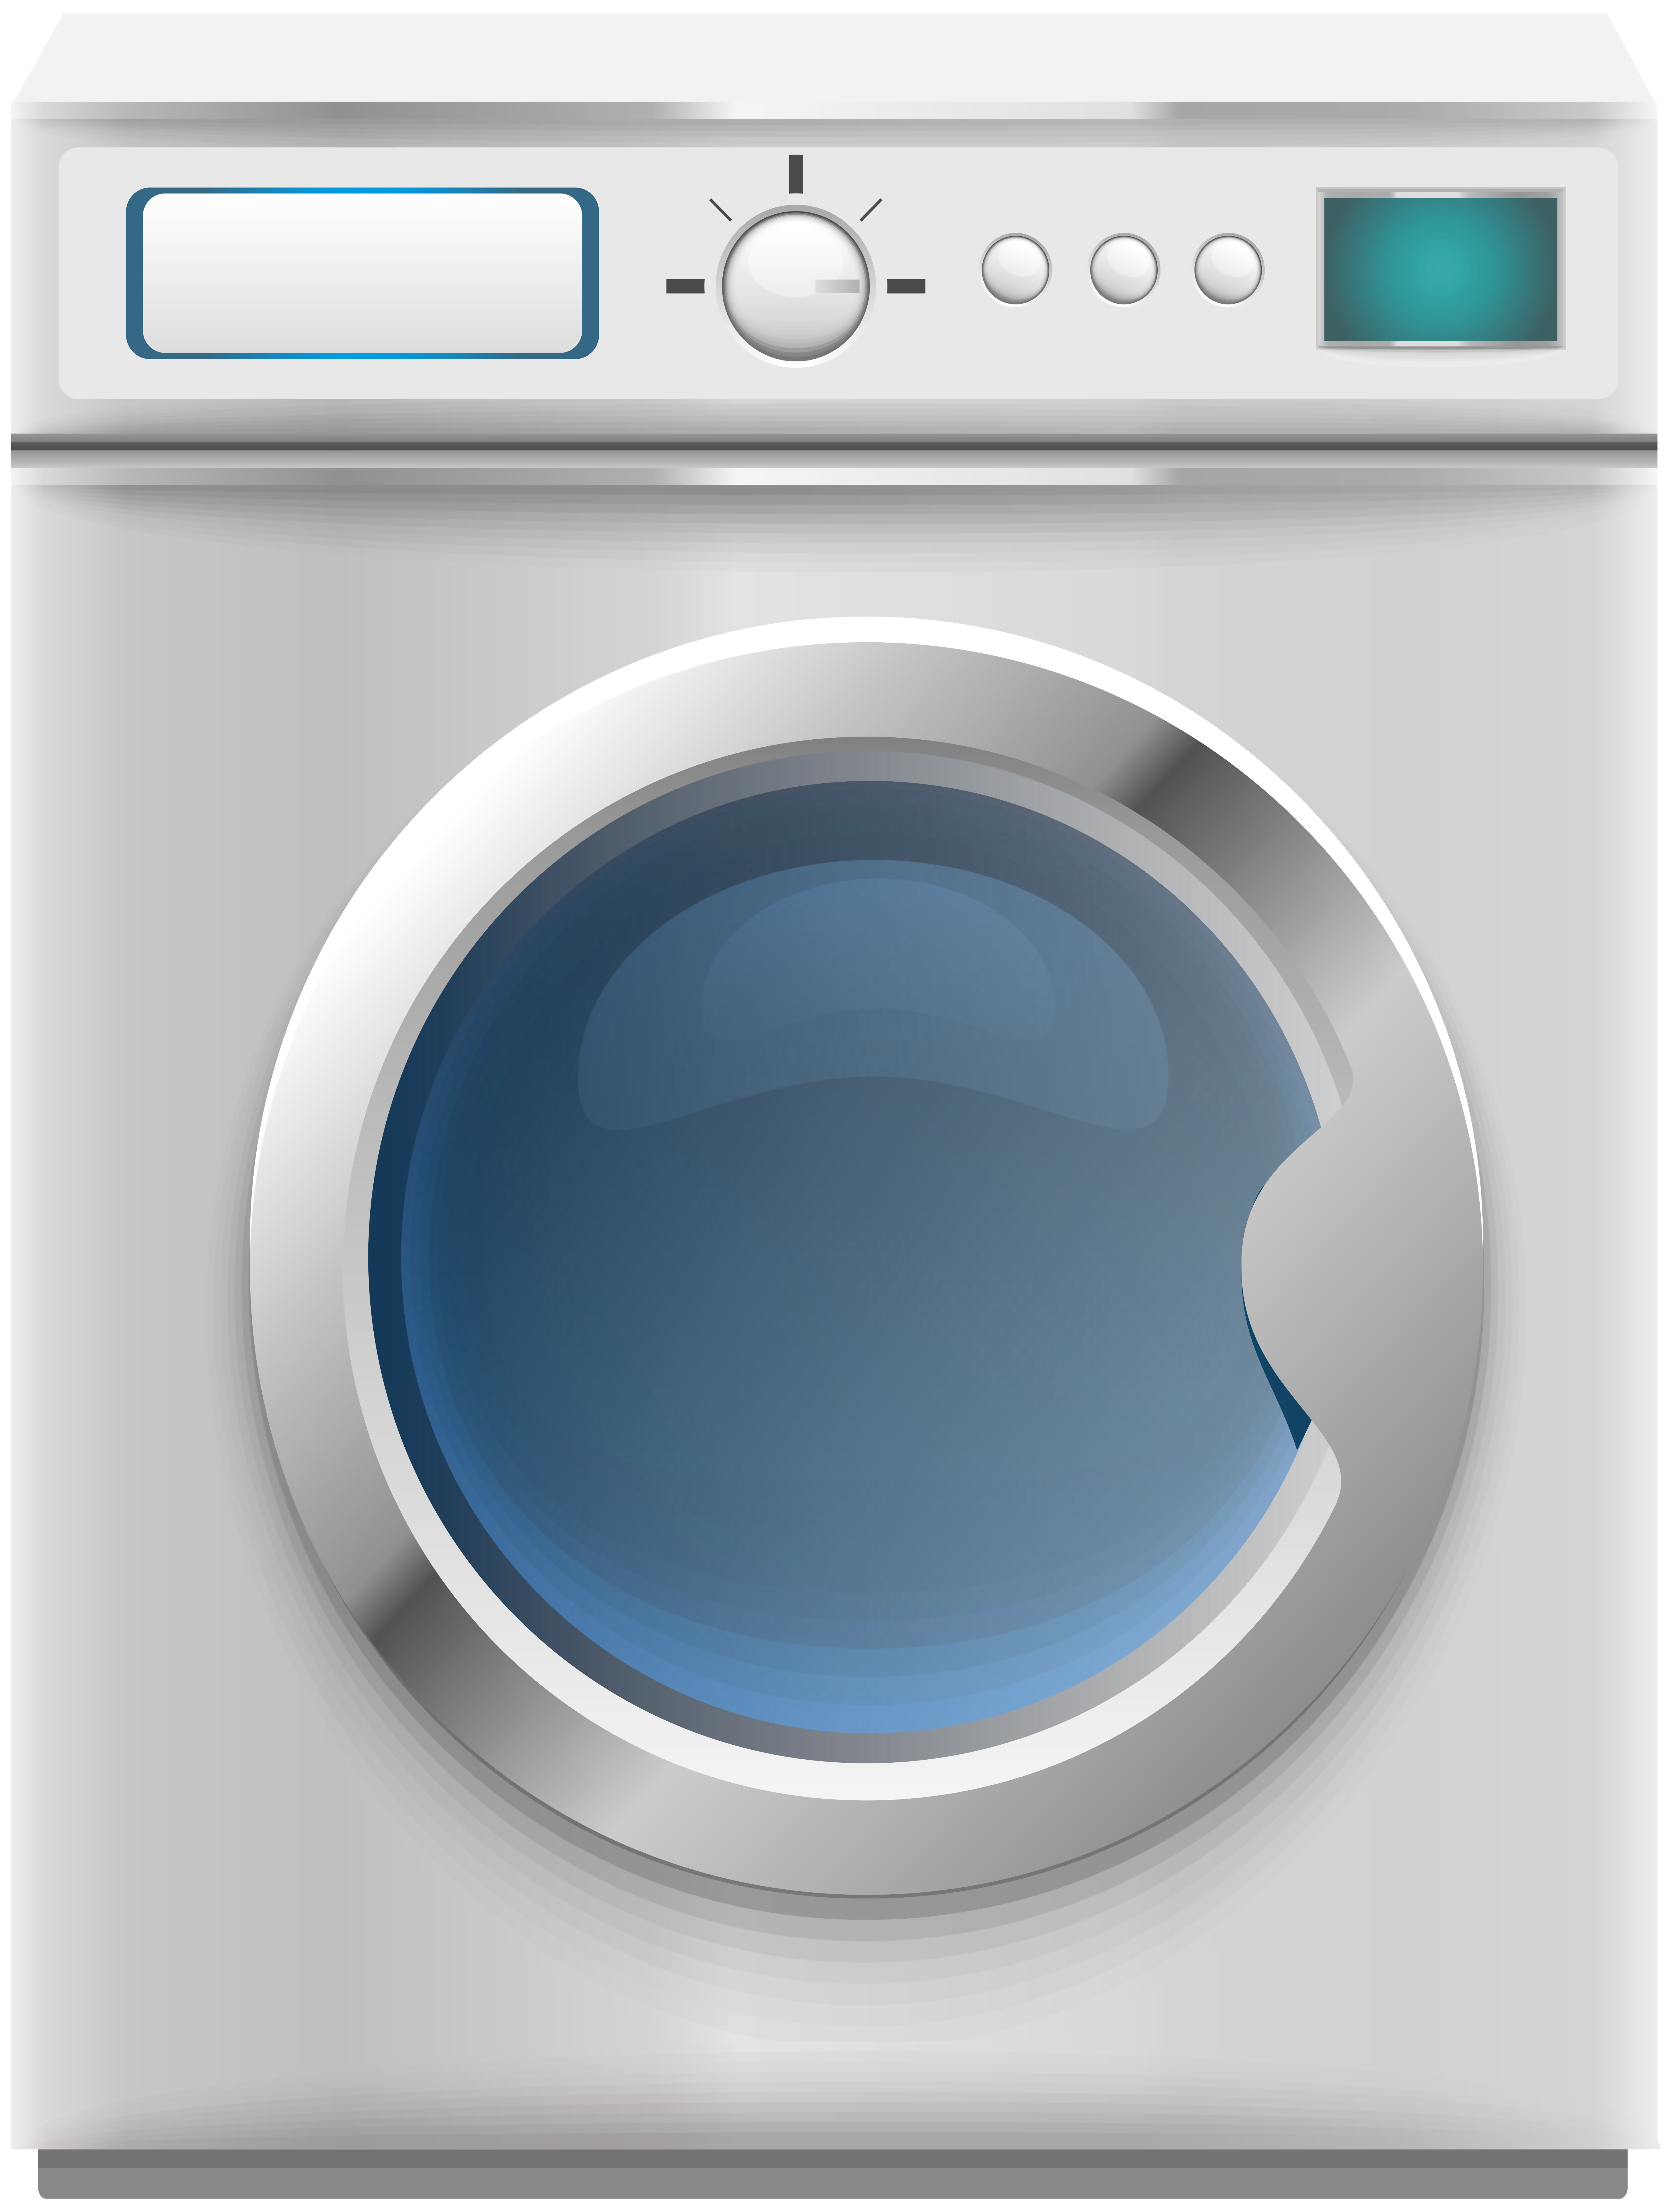 Washing Machine PNG Clip Art.